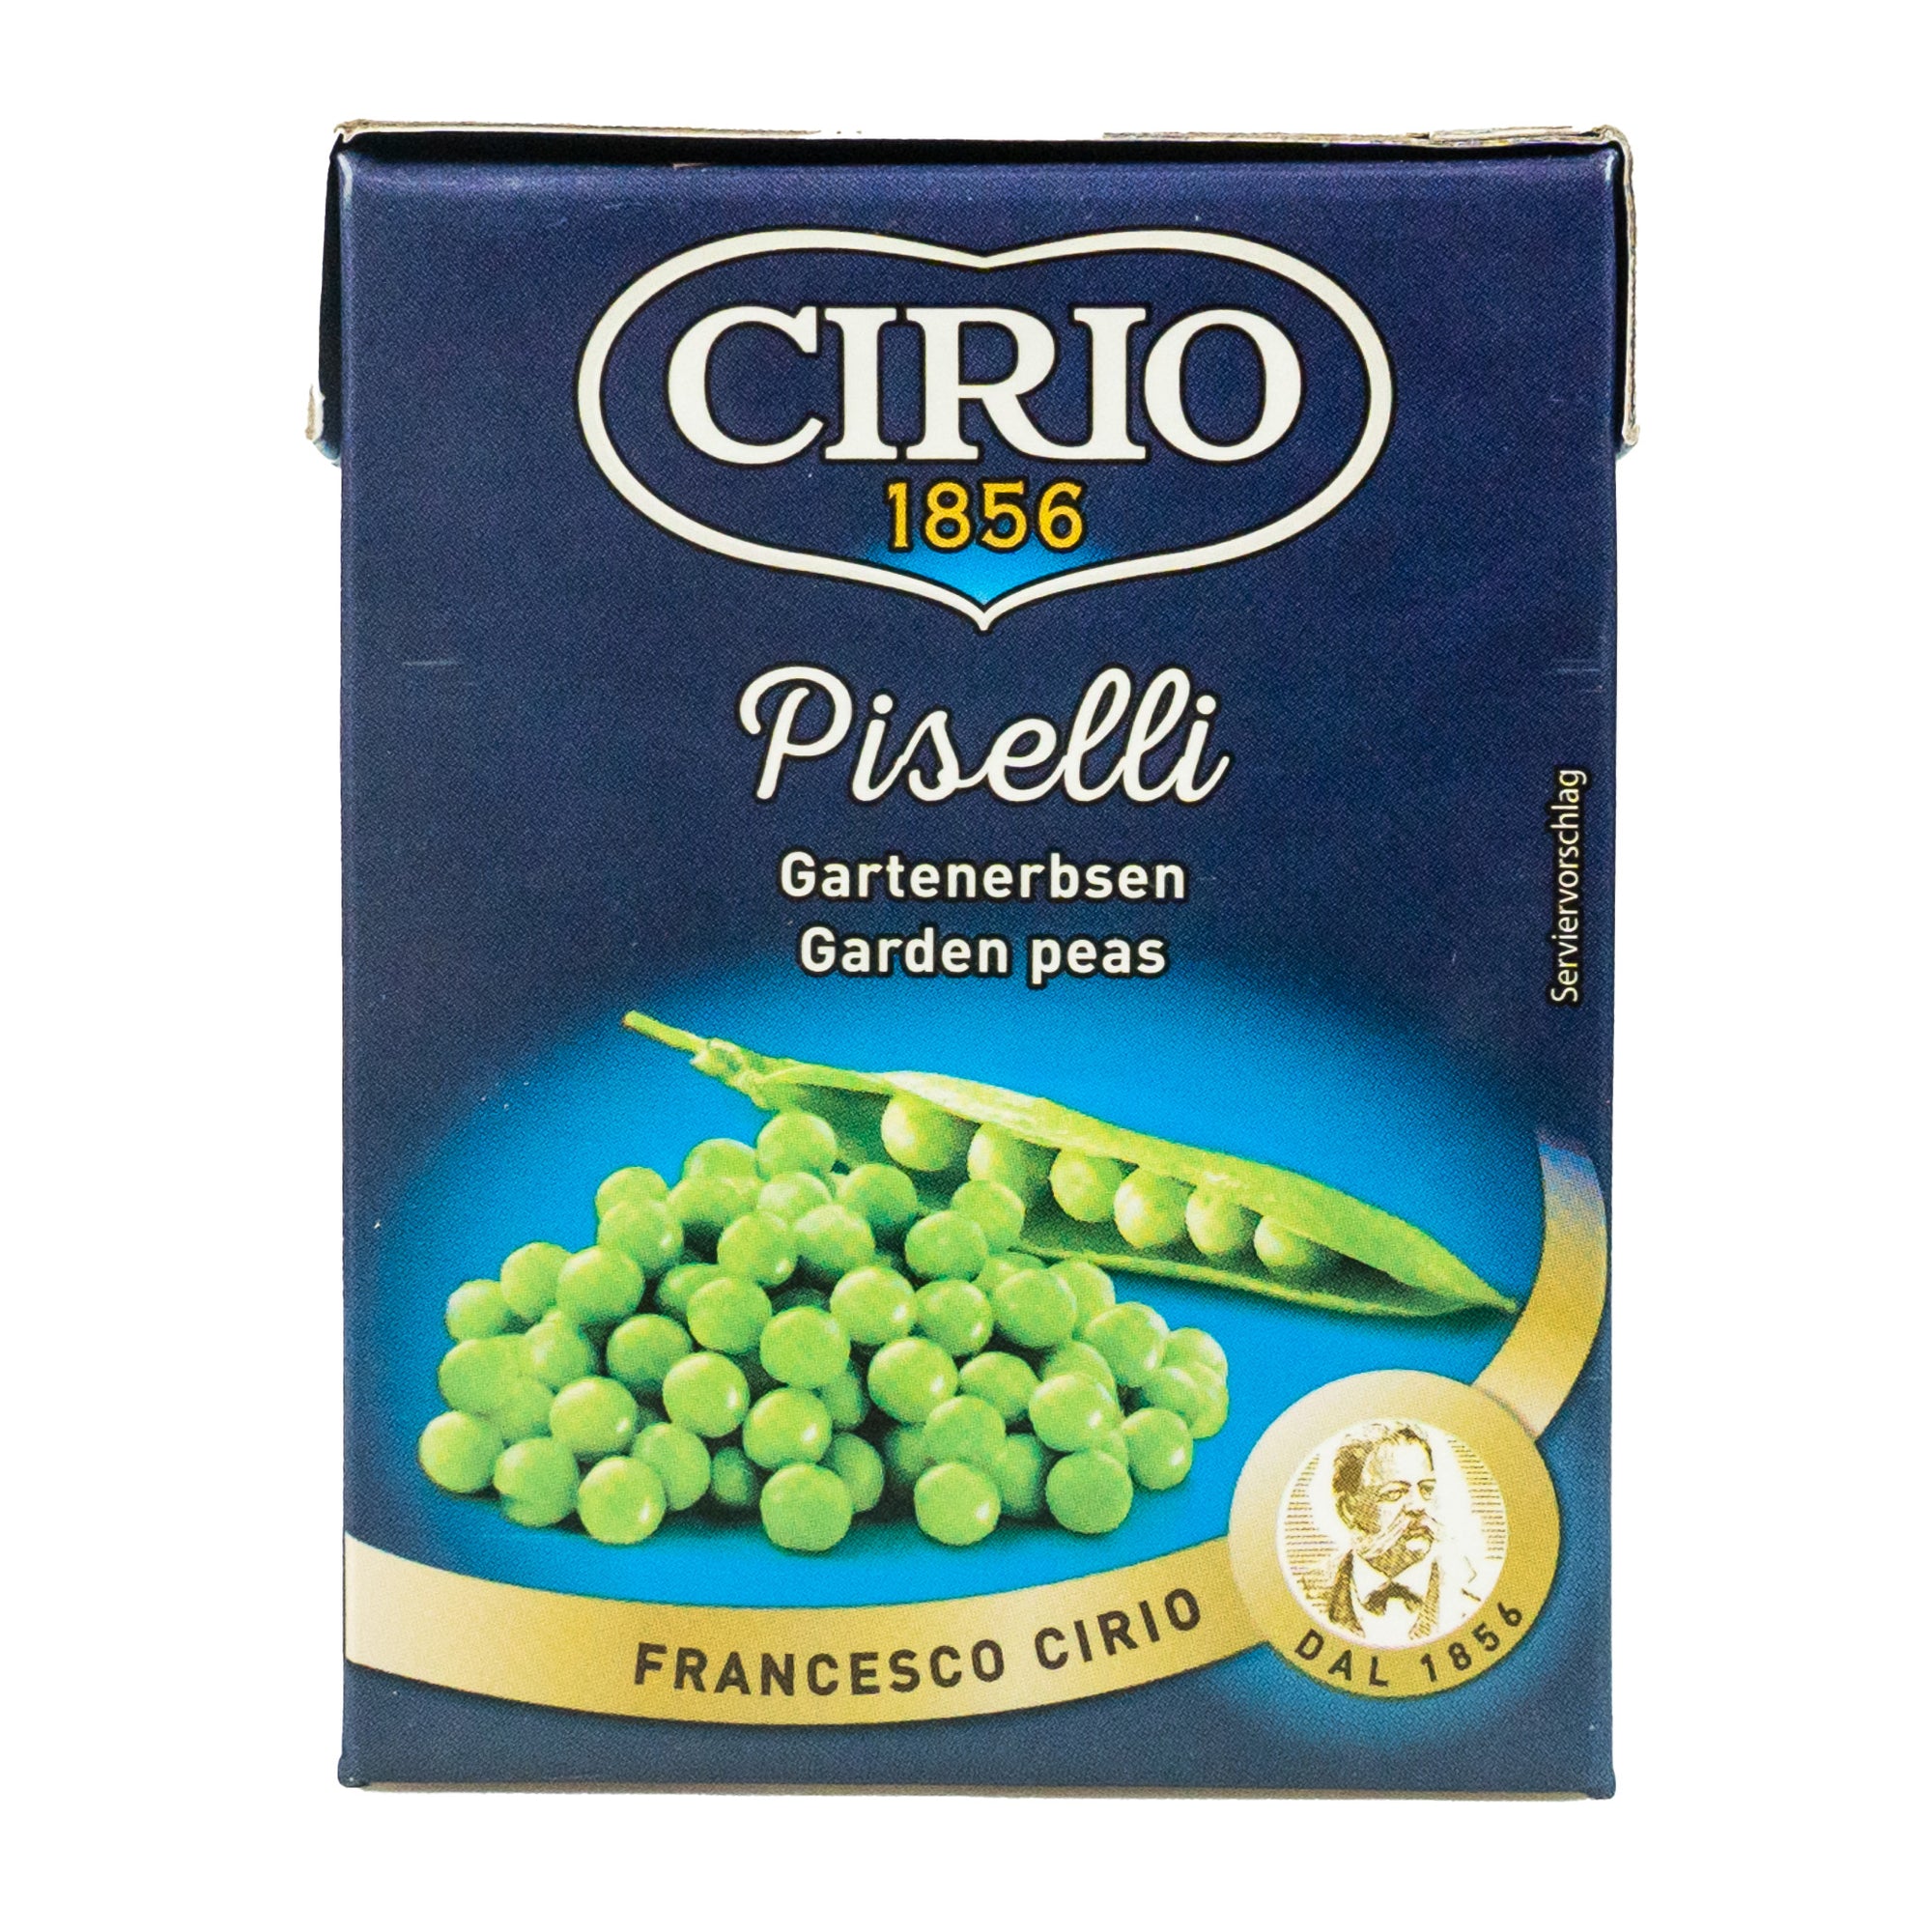 CIRIO - GREEN PEAS - 380g - Jet Italian Deli - JID-DR-LO - EWTH - Italian food - Italian grocery - Food delivery - Thailand - Wine - Truffle - Pasta - Cheese